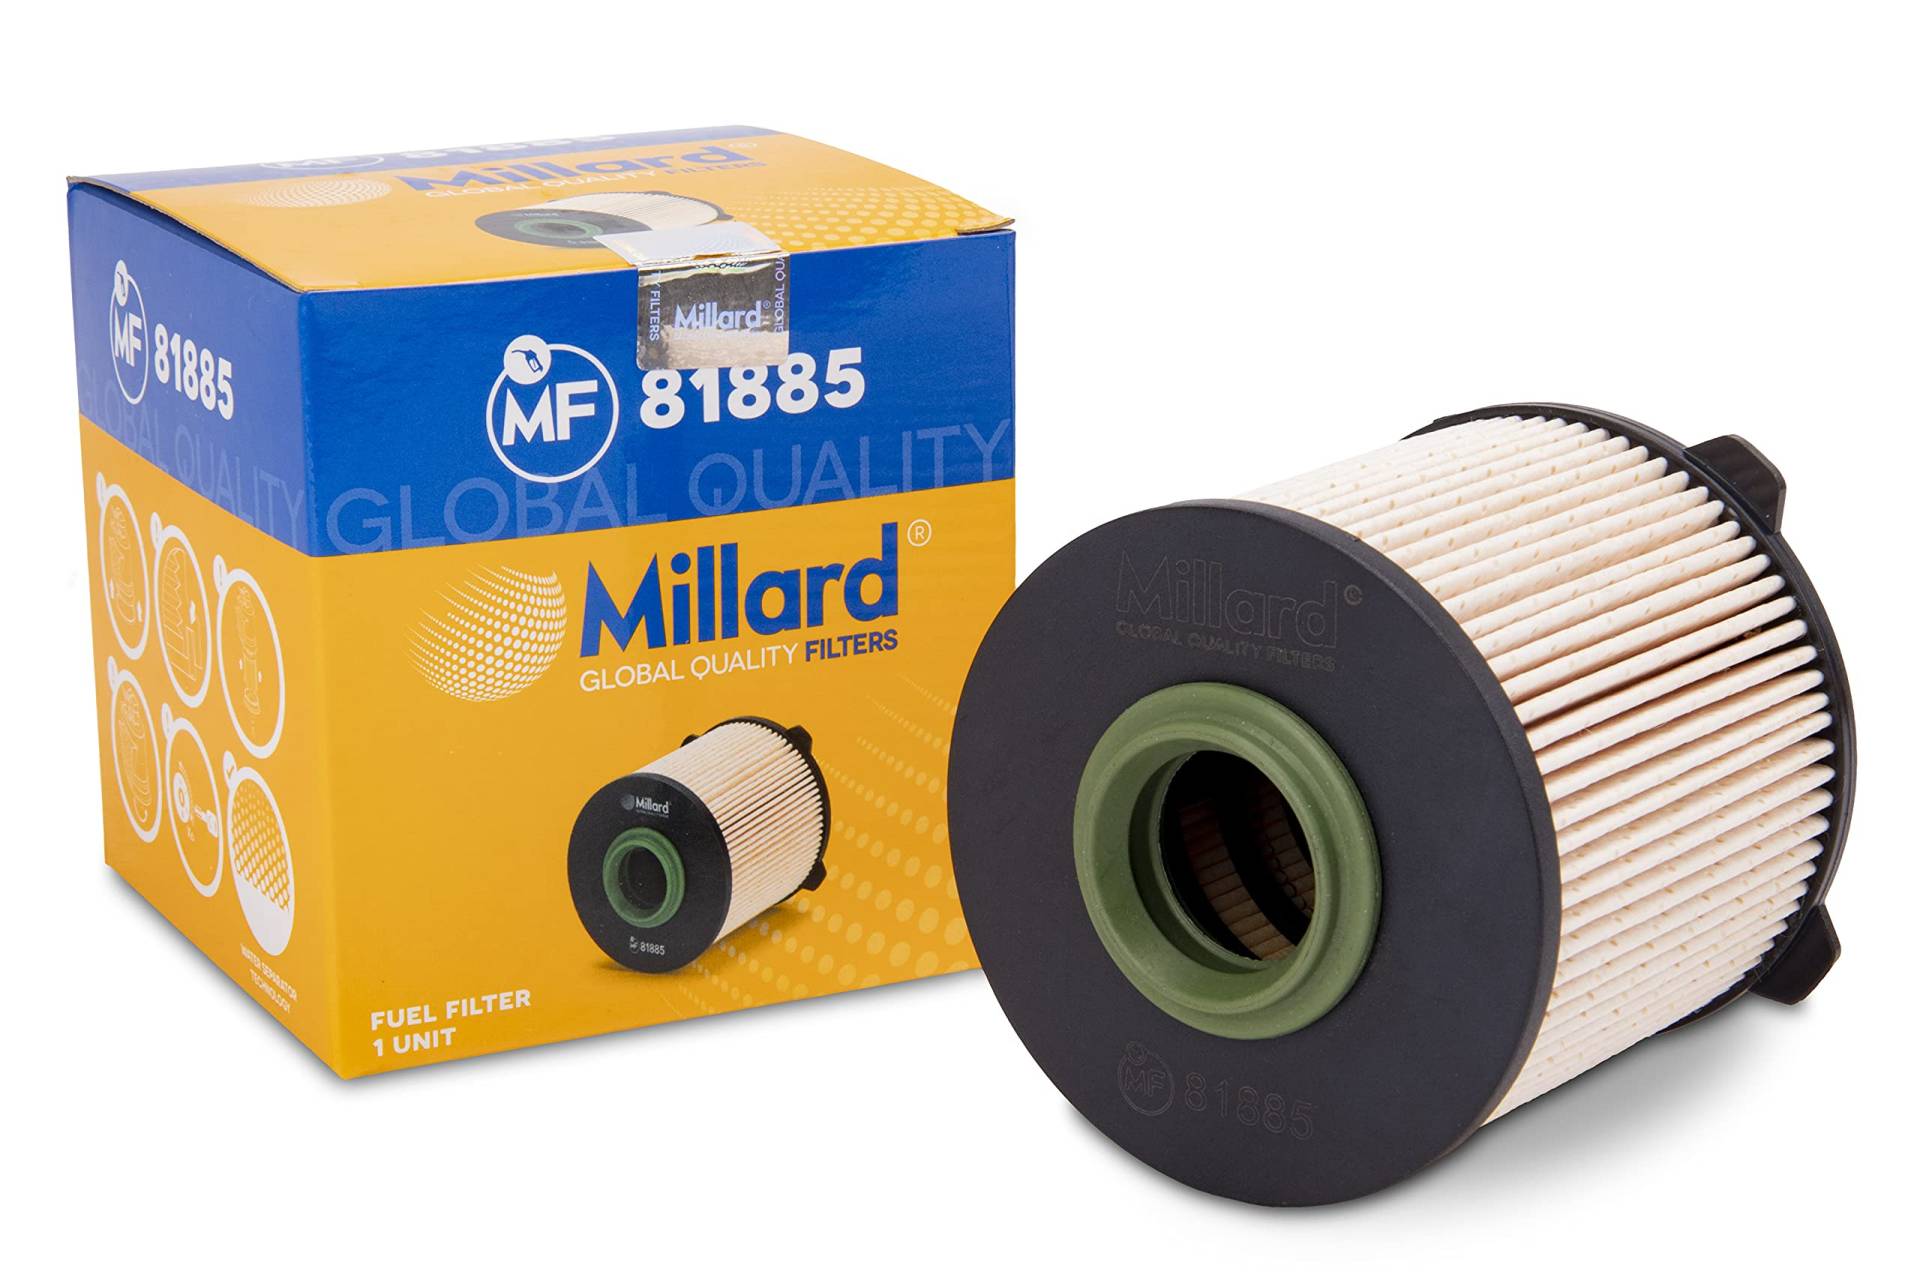 Millard Filters Auto-Kraftstofffilter Millard MF81885 91x89x25 mm Global Quality von Millard Filters